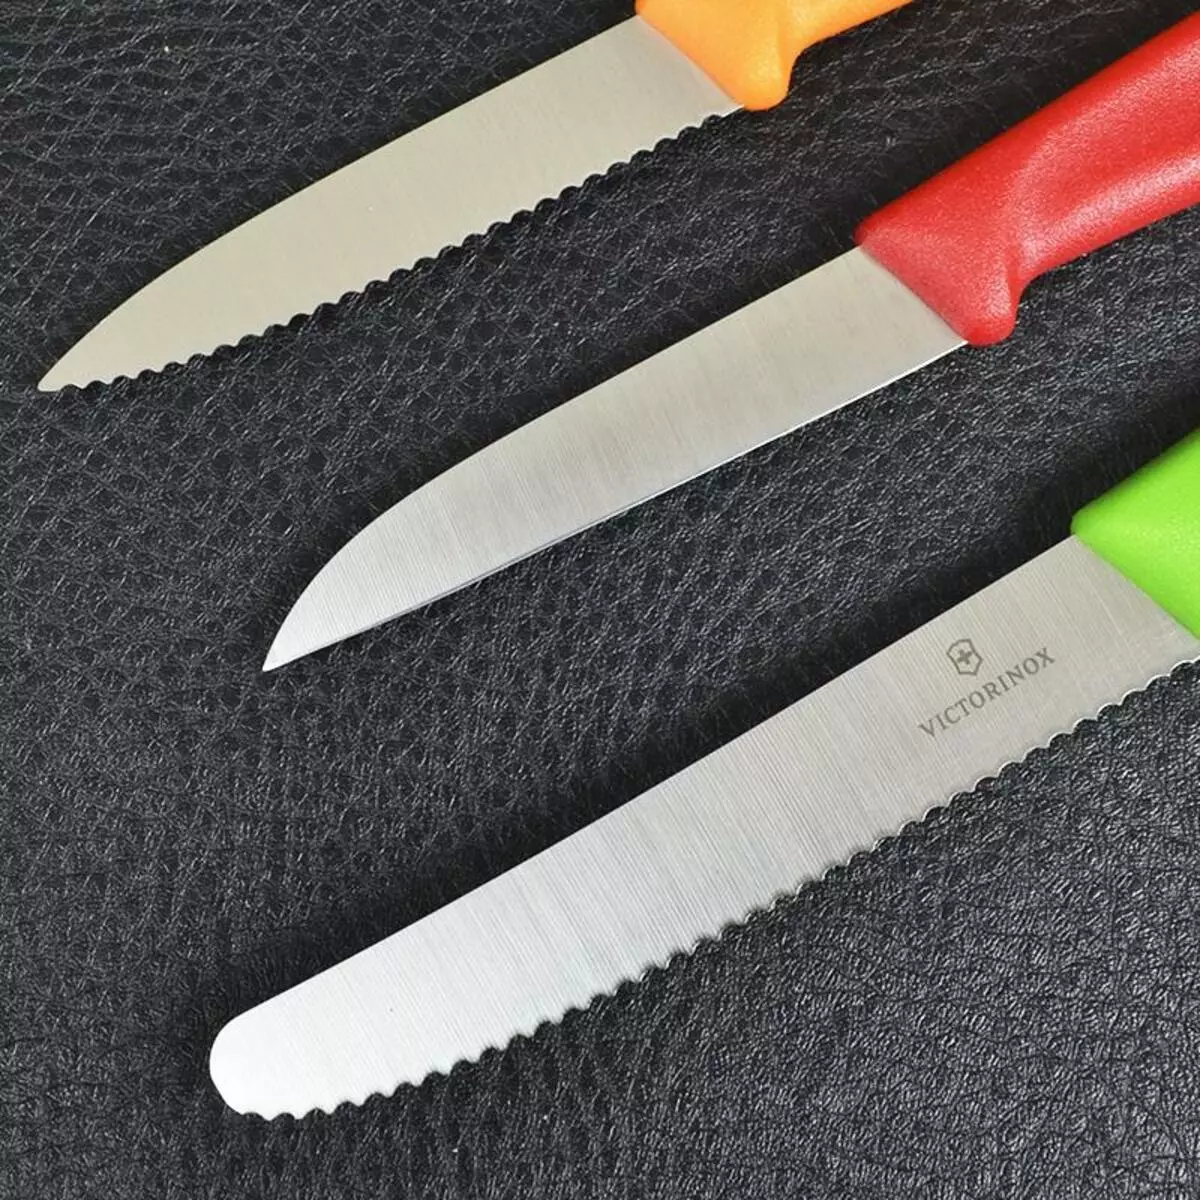 चाकू व्हिक्टरिनोक्स (30 फोटो): स्वयंपाकघर चाकूचा एक संच निवडणे. बटाटे आणि इतर मॉडेल साफ करण्यासाठी स्विस चाकांचे वर्णन. सर्वोत्तम पर्याय फर्म 25001_16